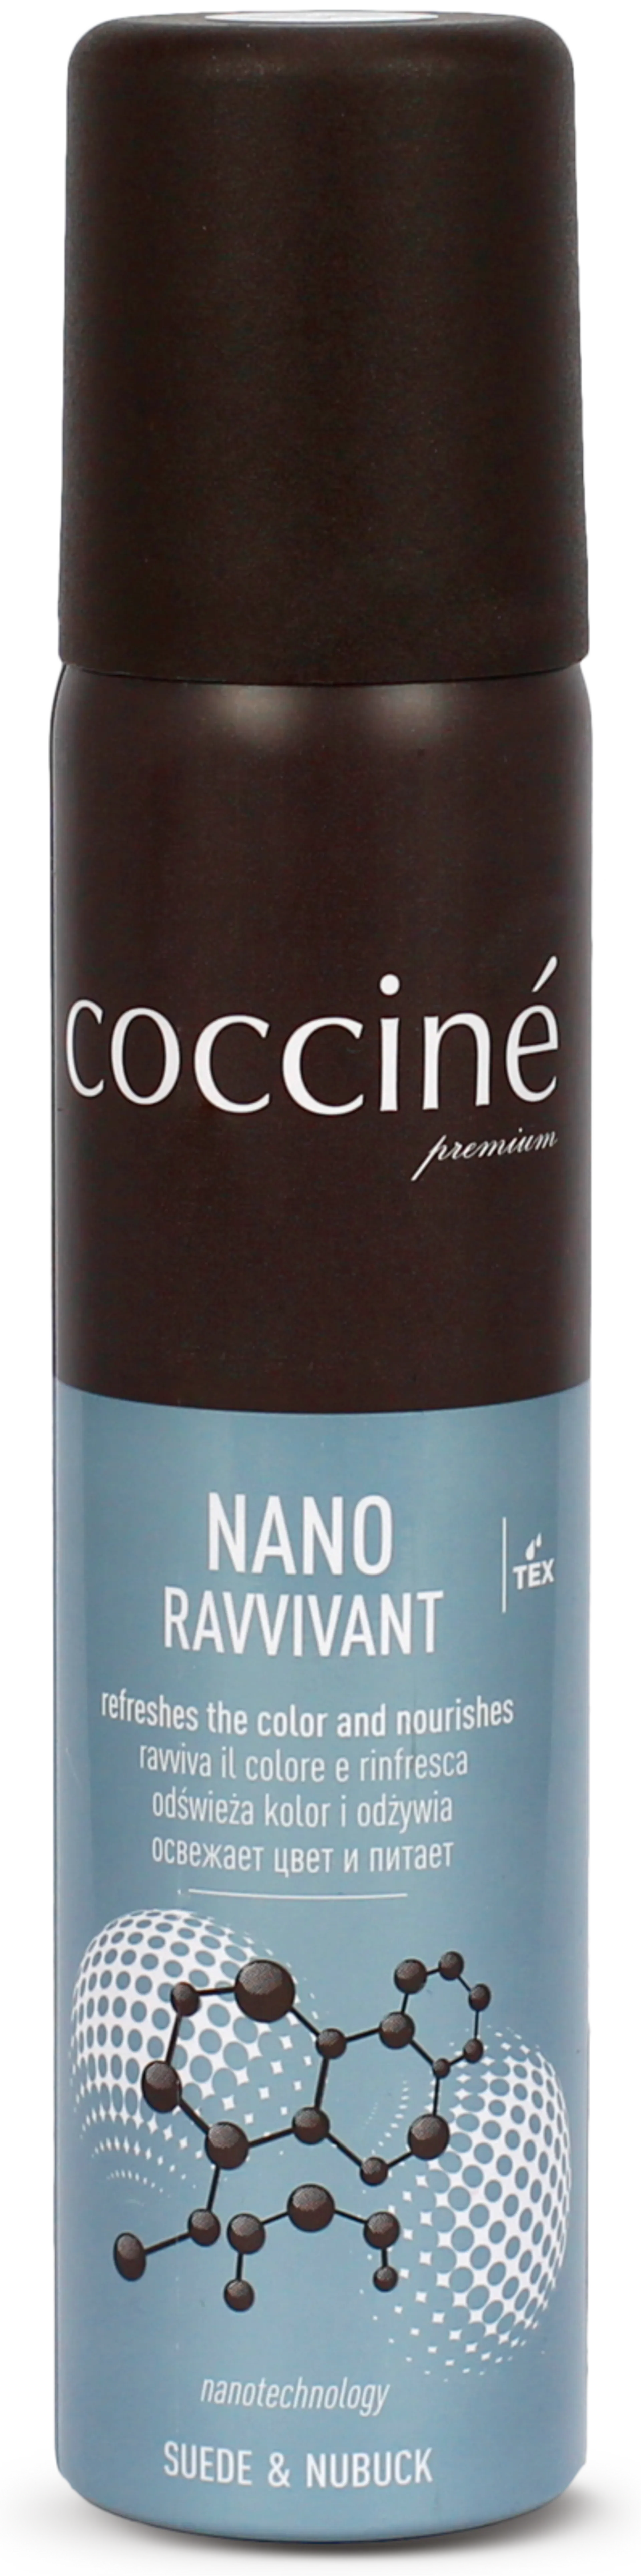 Coccine Nano Ravvivant  hoitoaine mokkanahalle ja nupukille 100 ml, musta